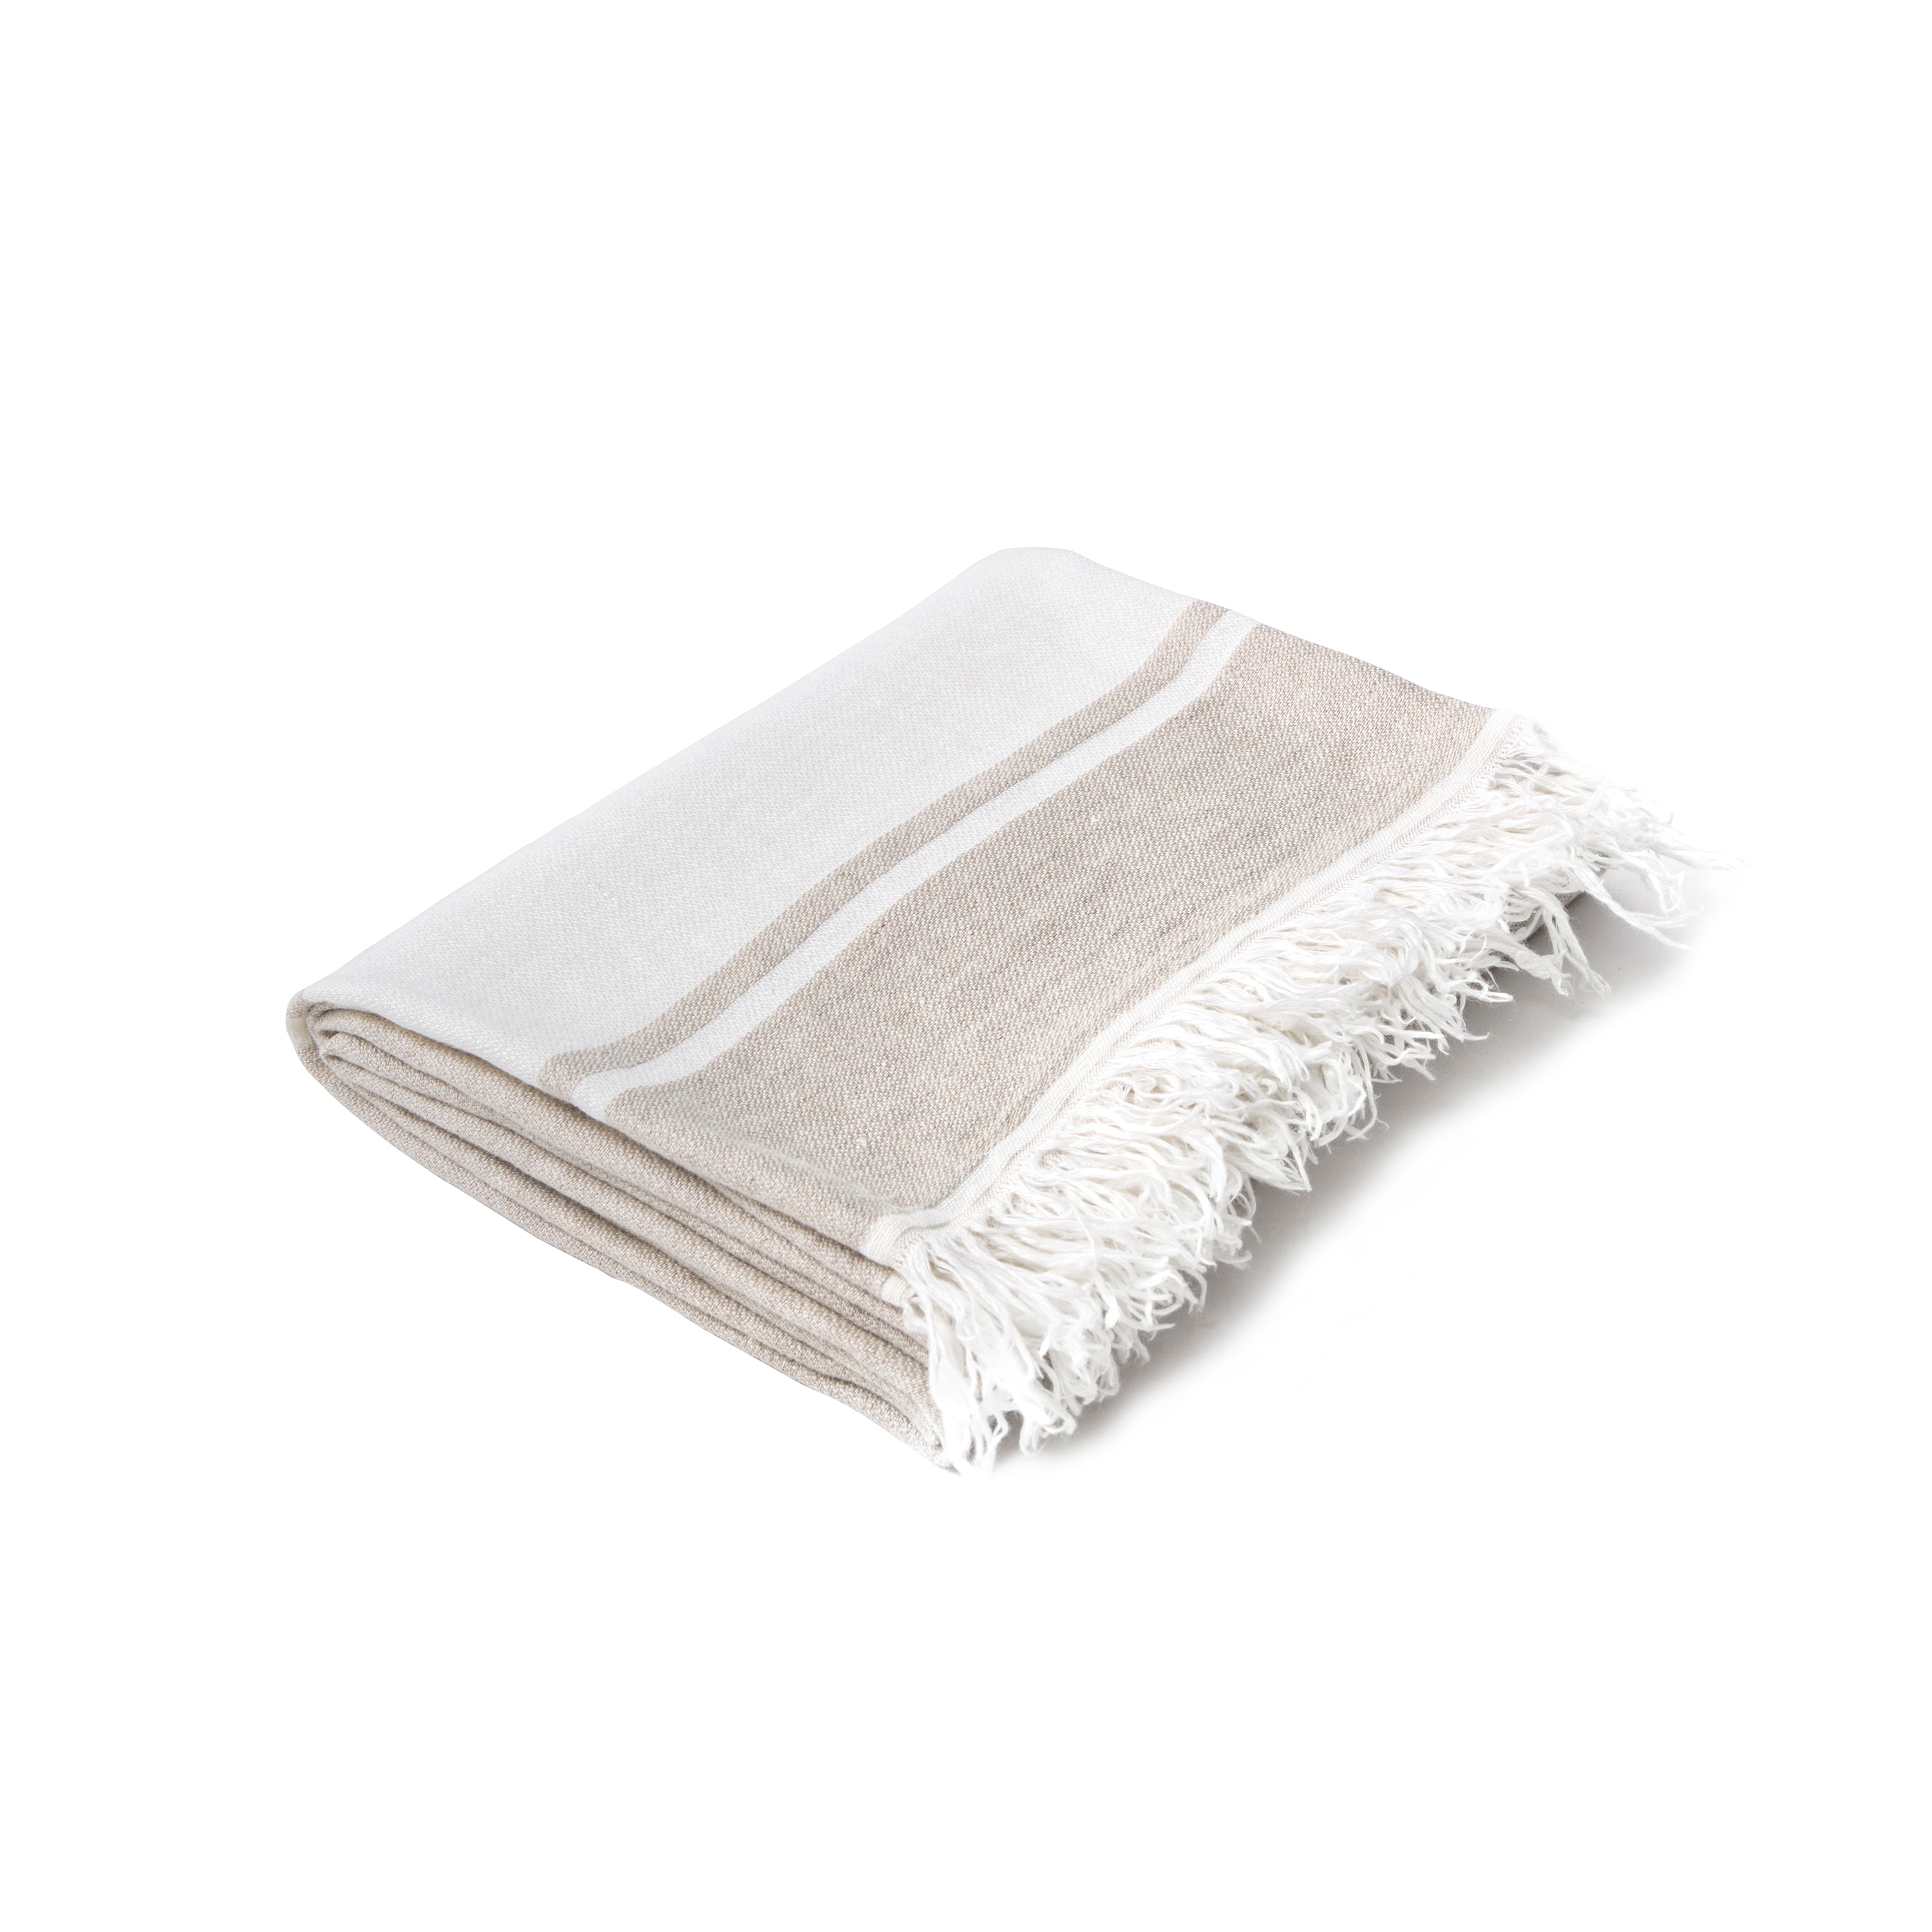 Linen Blanket: Flax